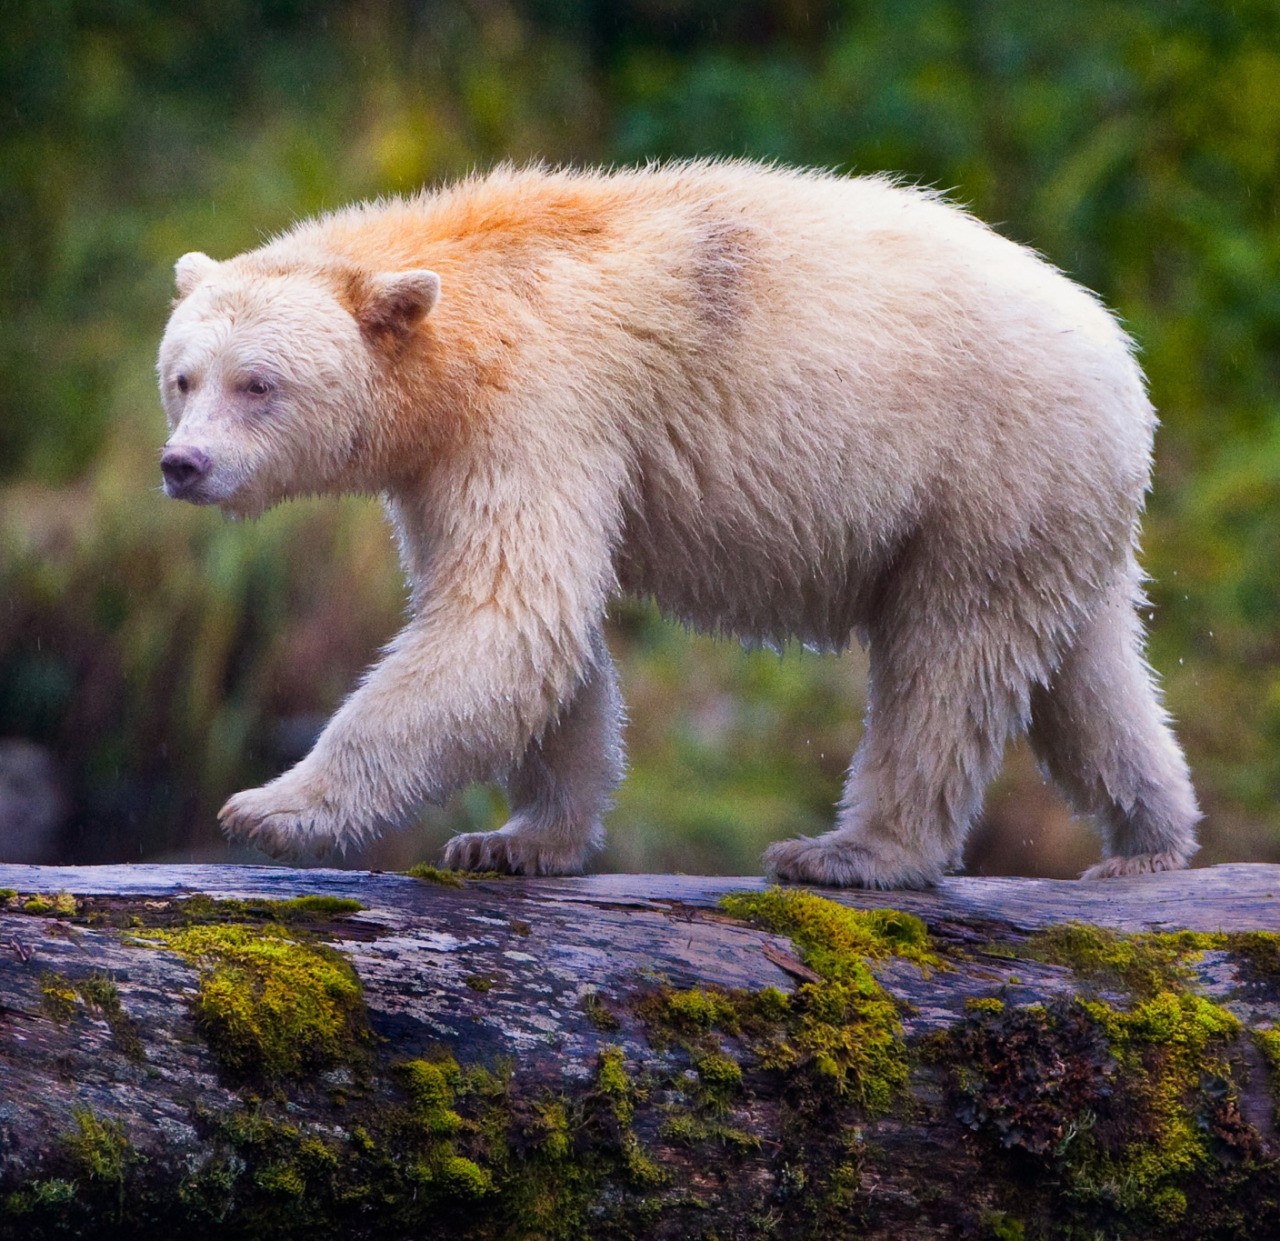 Призраки канадского леса. Почему вся популяция черных медведей стала белой?⁠⁠